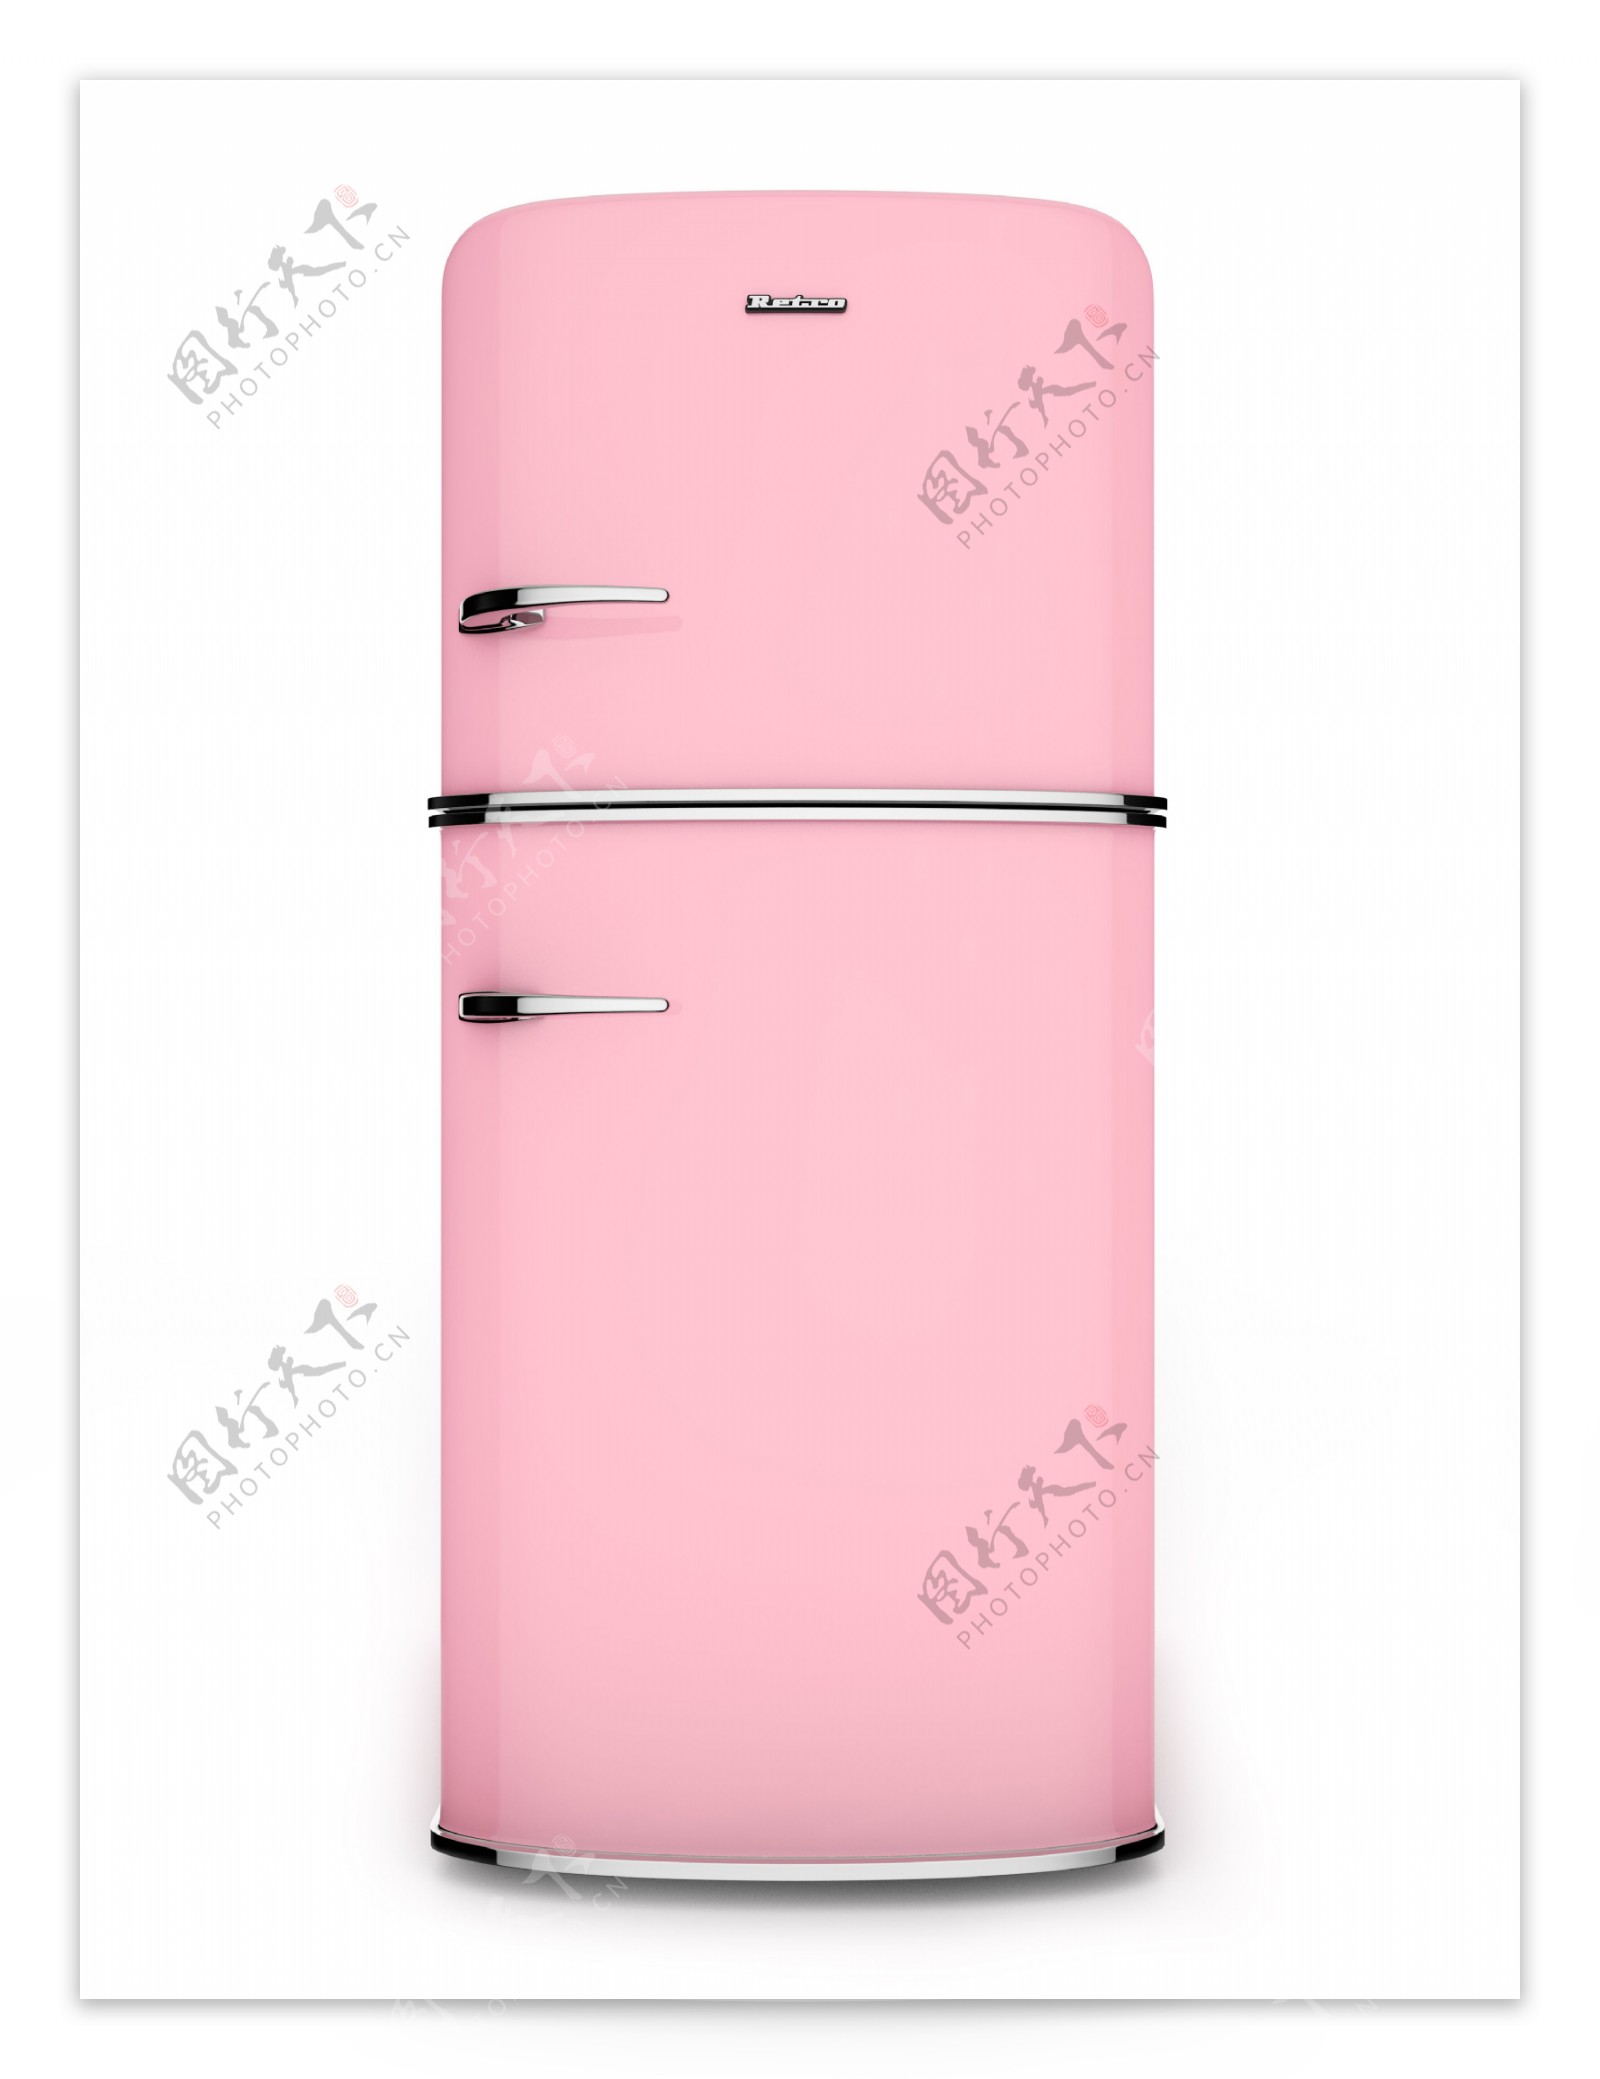 粉红色电冰箱